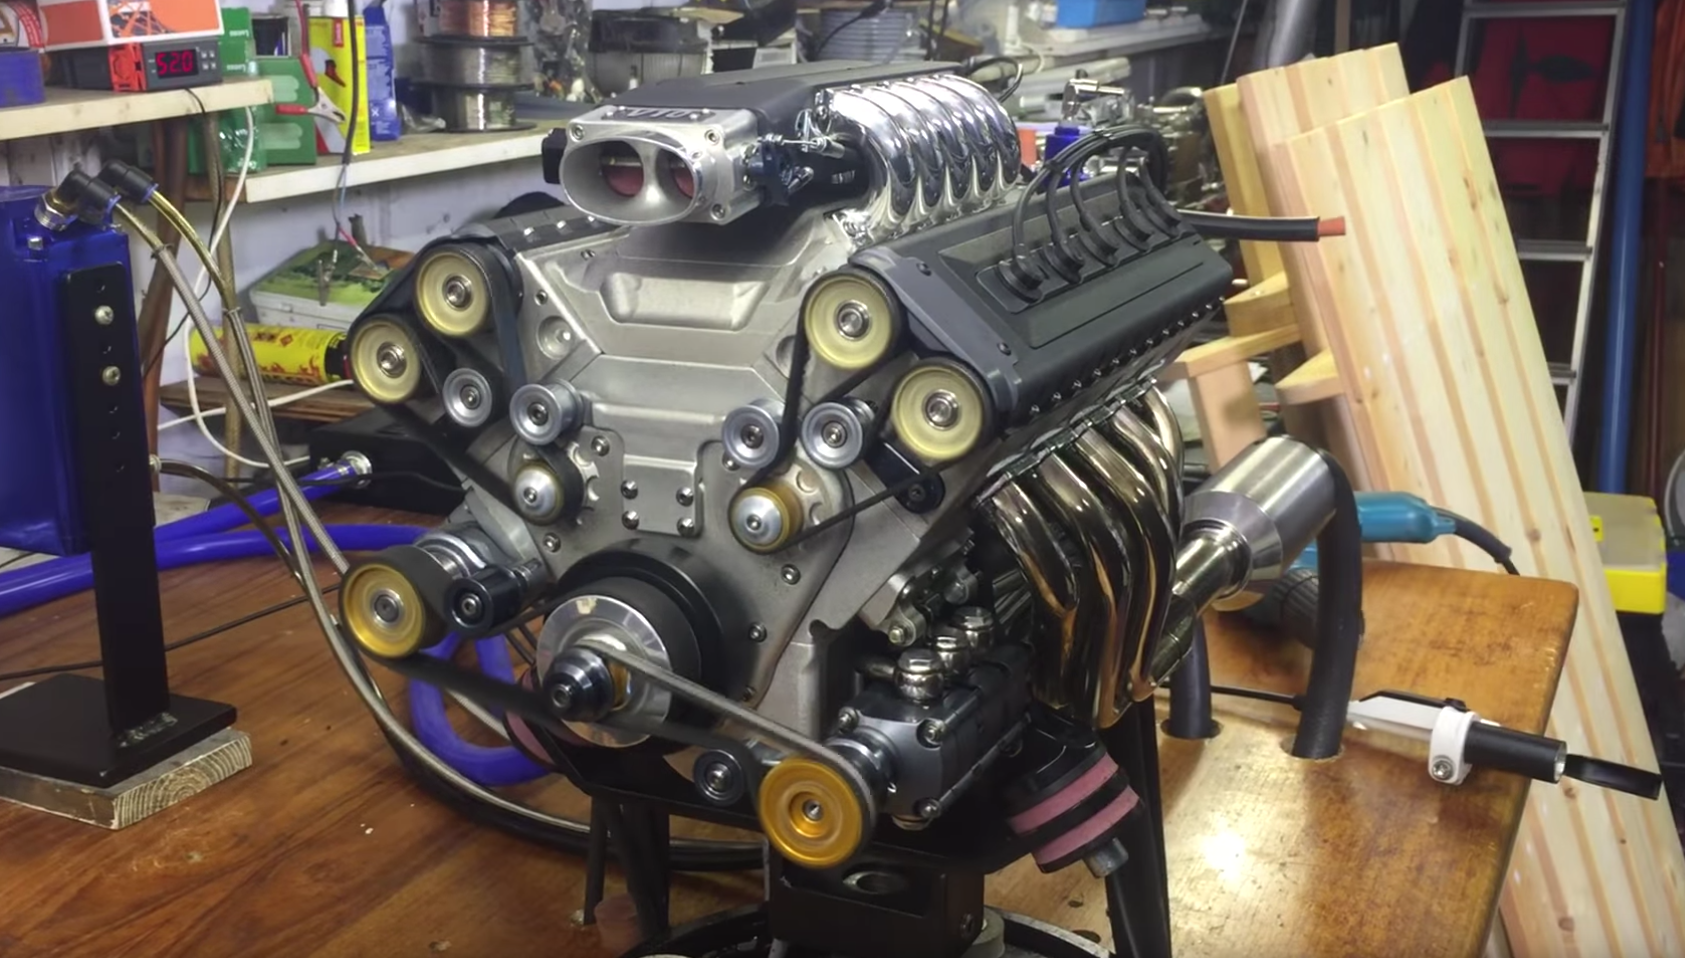 Vídeo: este motor V10 de 125 cc es diminuto pero lo quieres